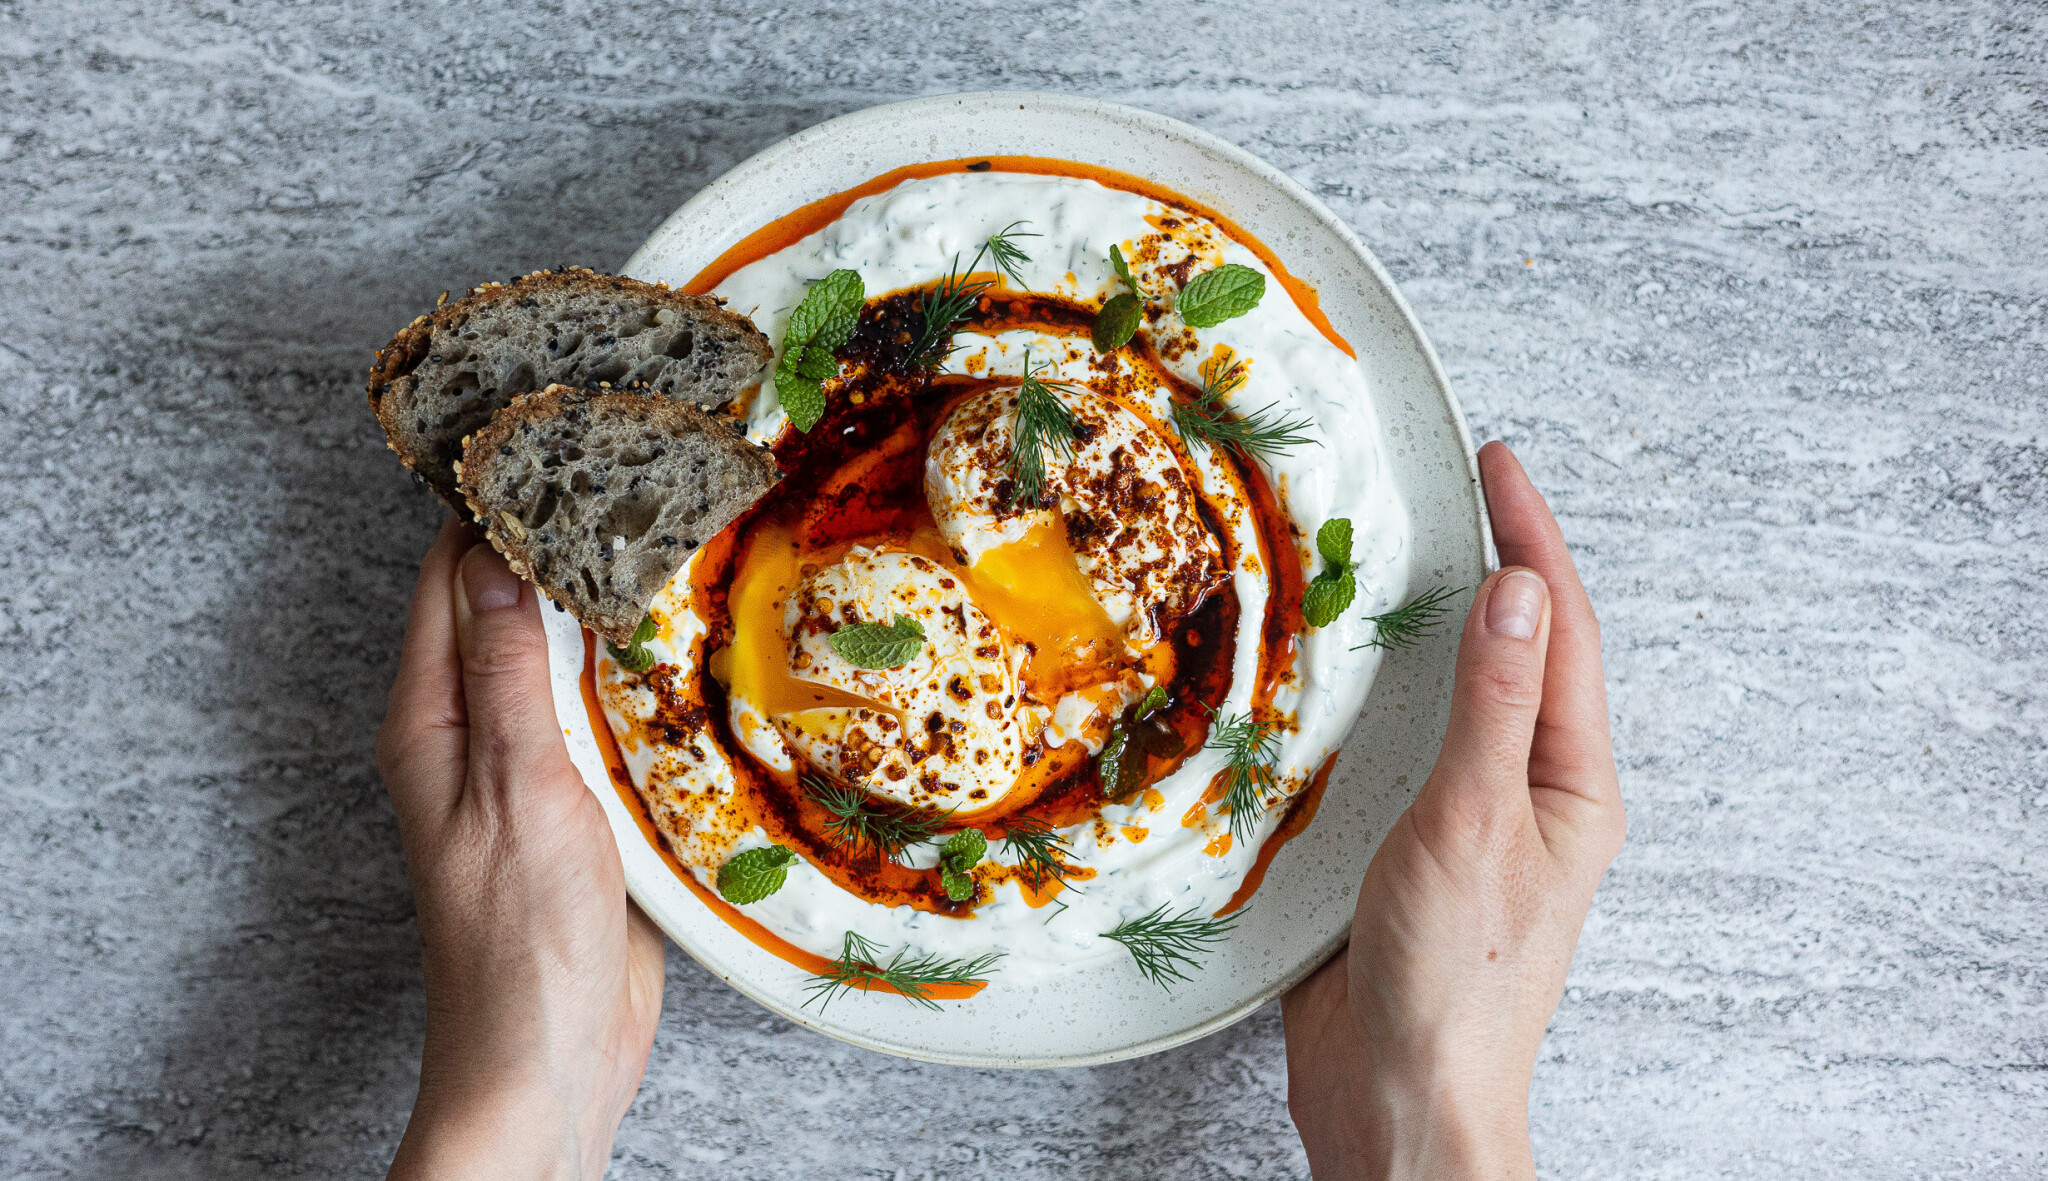 Turecká vejce Çılbır. Důvod, proč vajíčka snídat, obědvat i večeřet